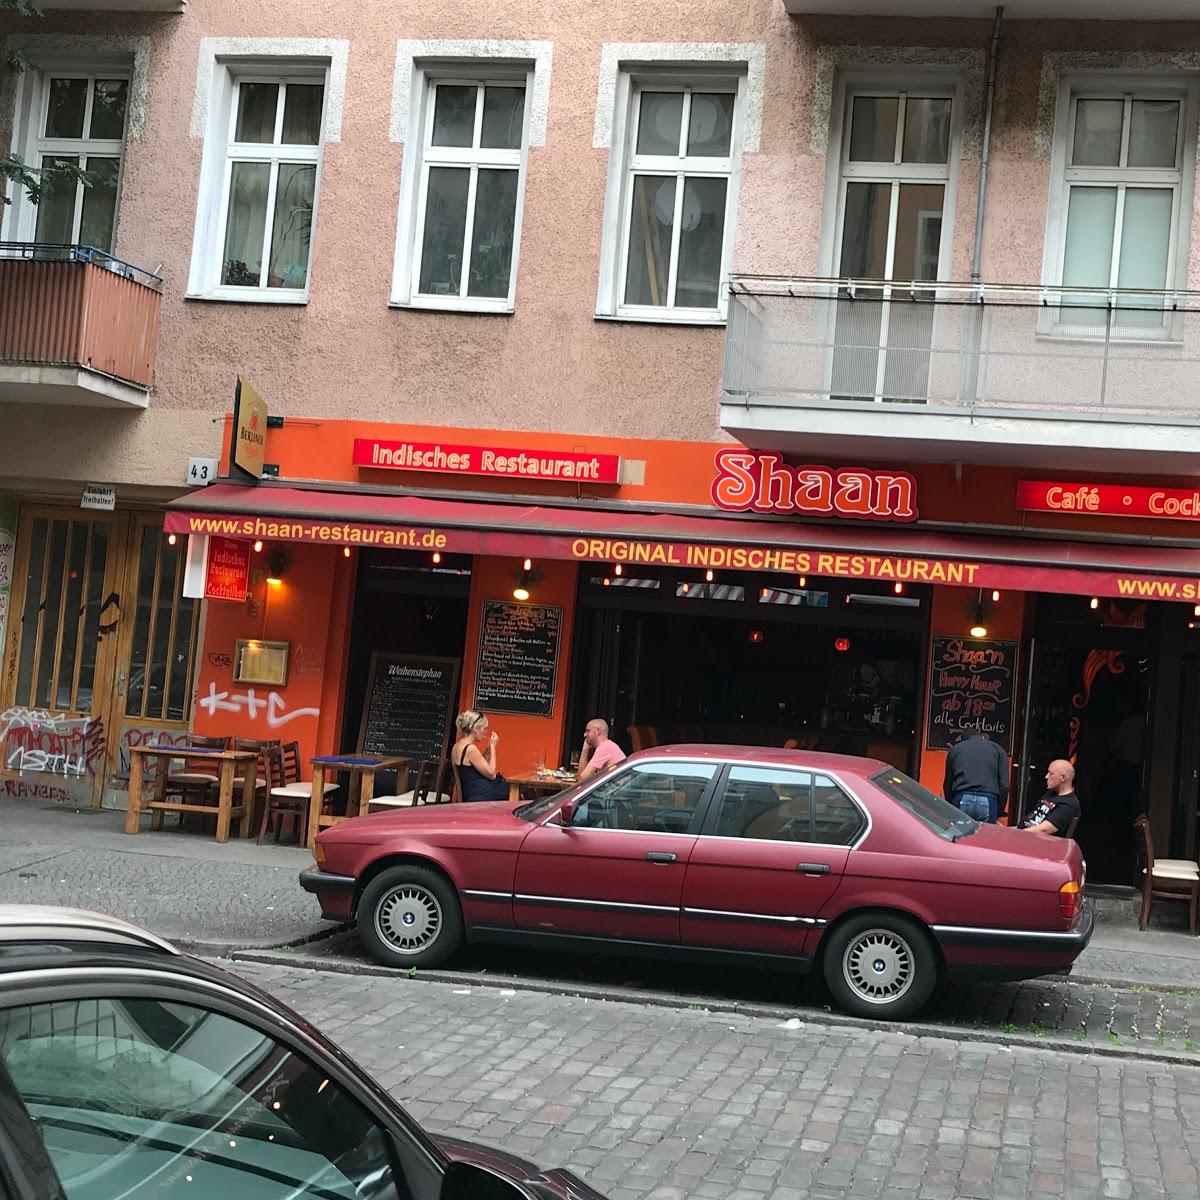 Restaurant "Shaan" in Berlin